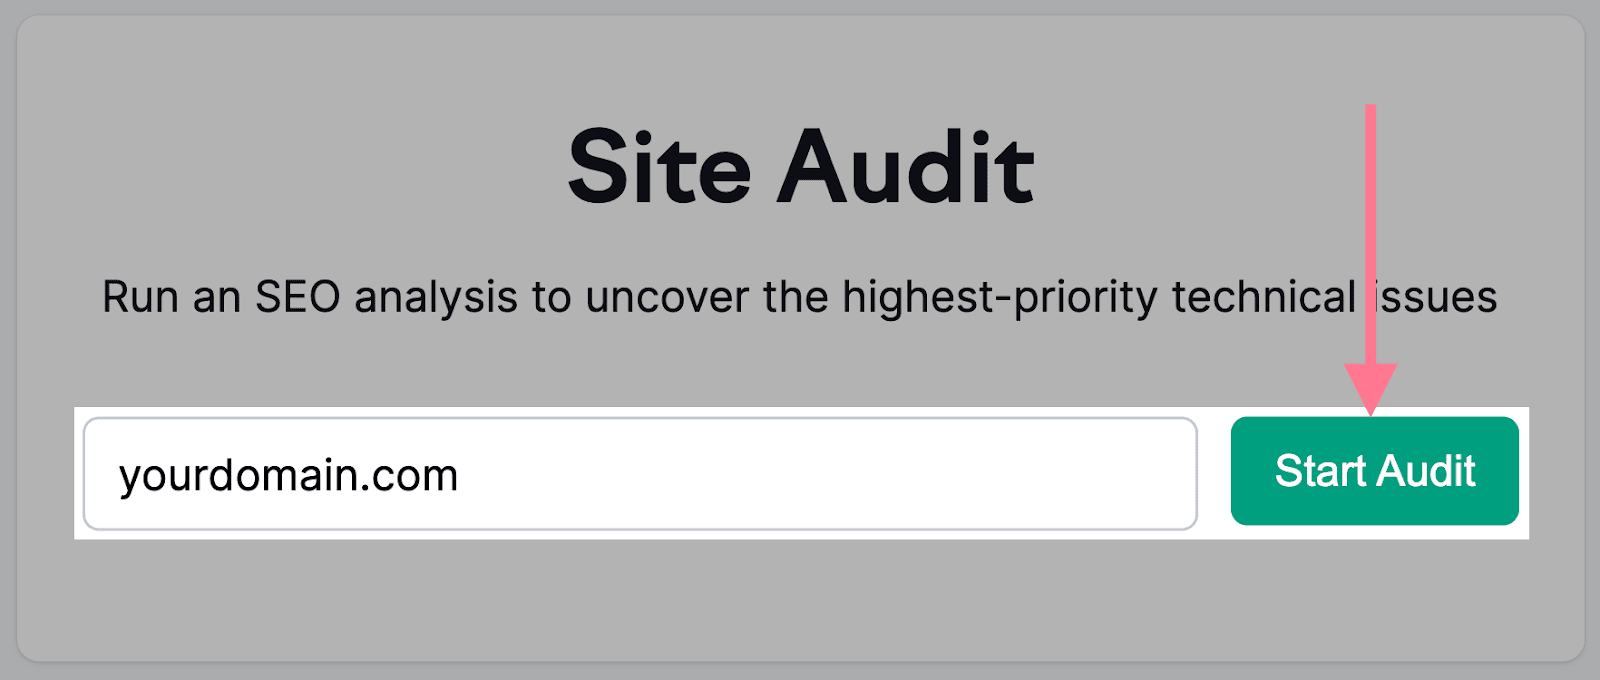 site audit tool